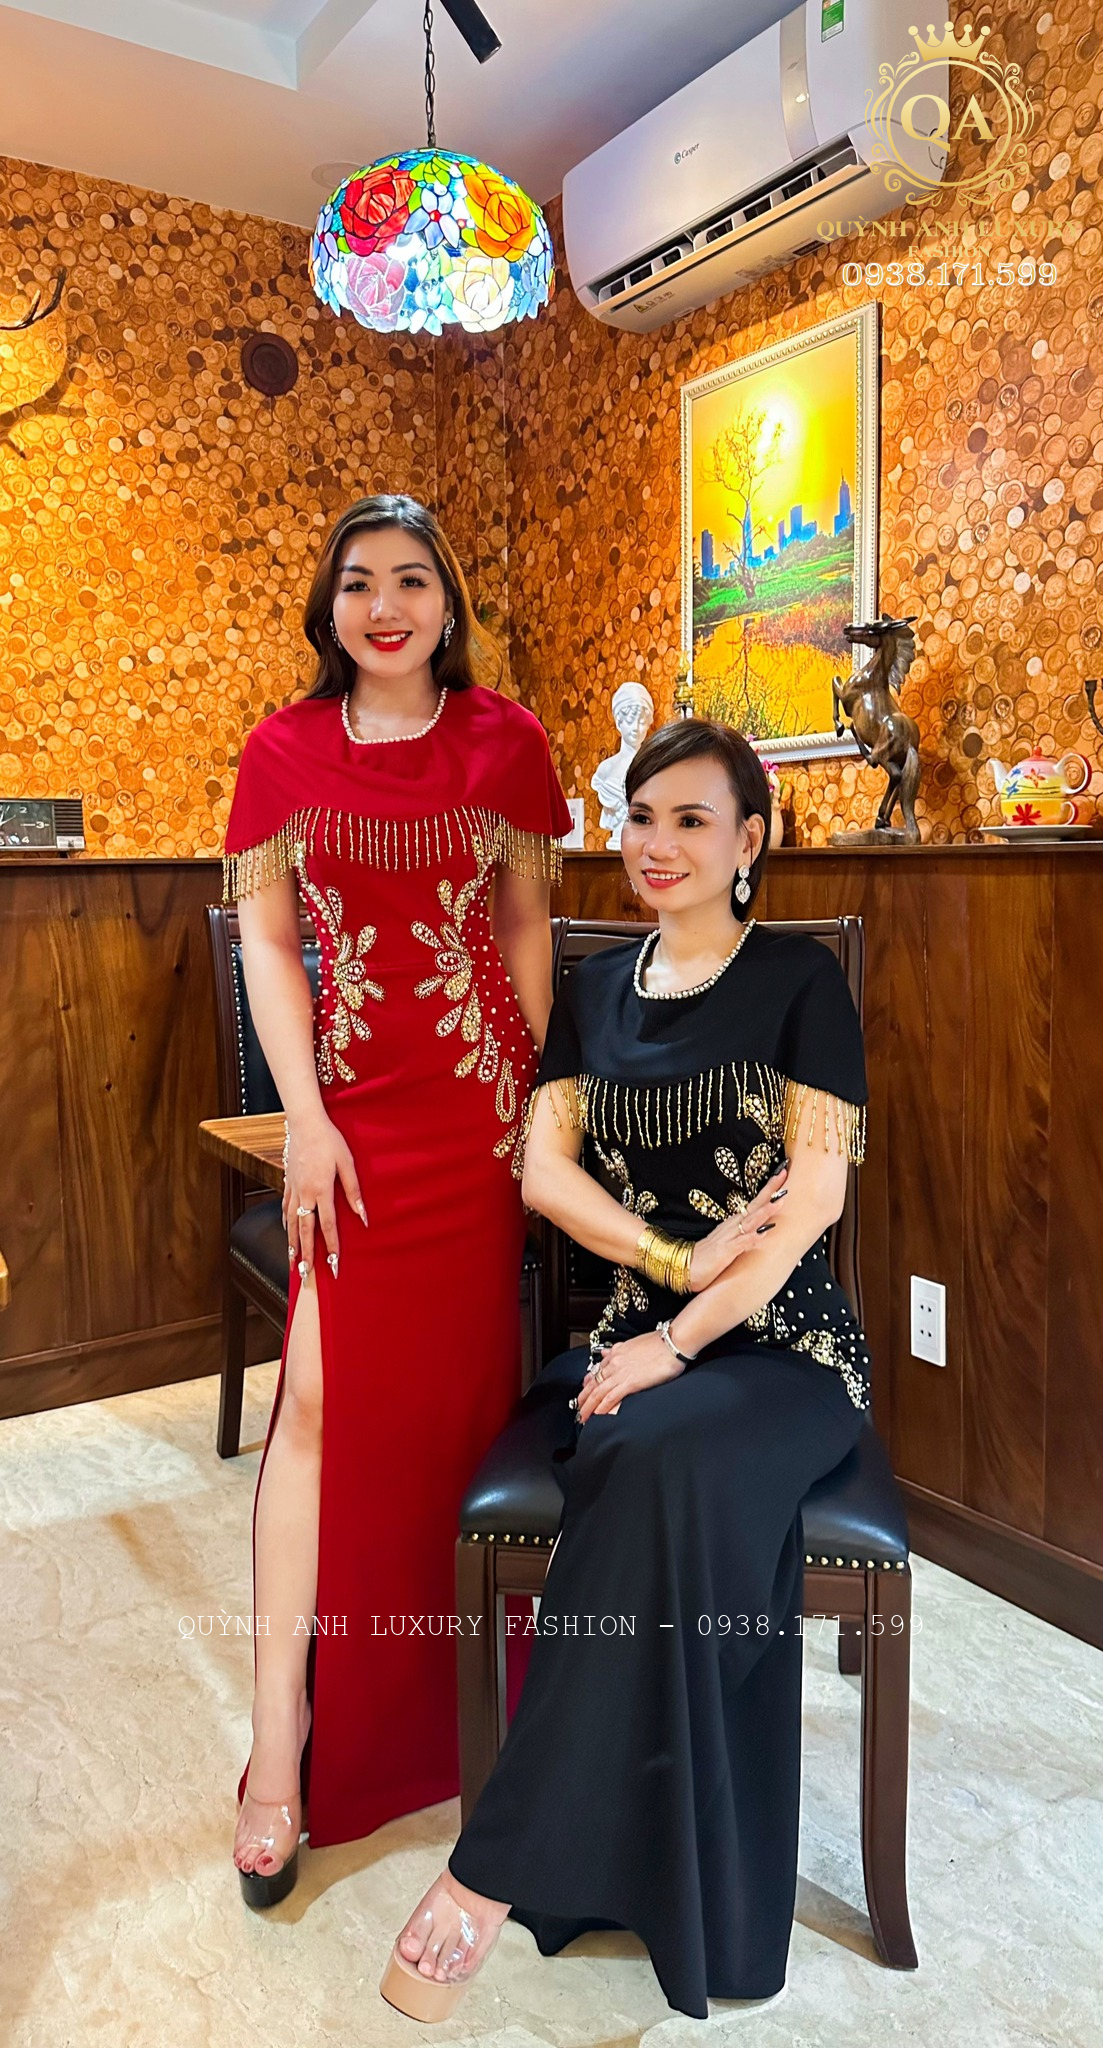 Quỳnh Anh Luxury giới thiệu đầm trung niên dự tiệc mới nhất